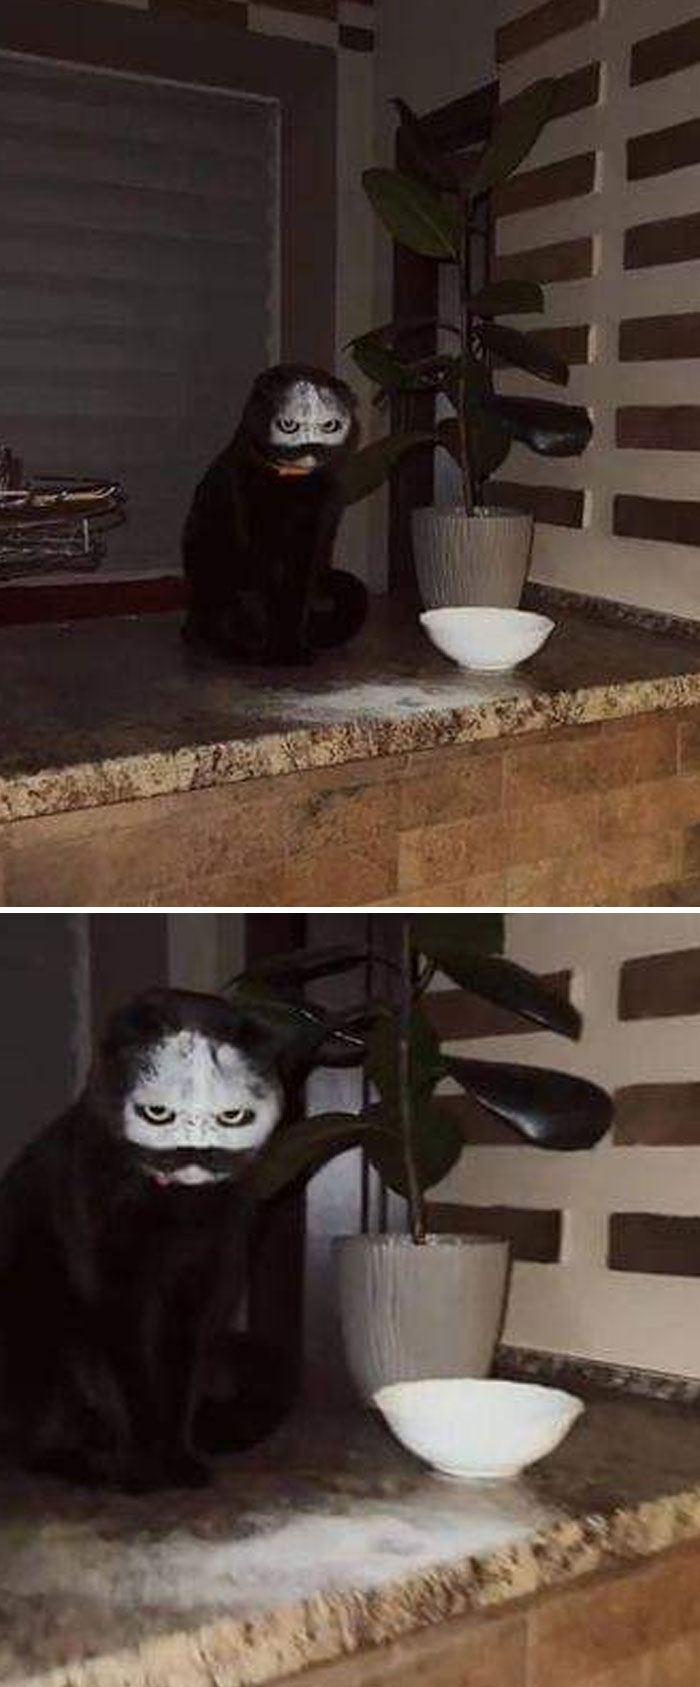 Le chat est entré dans un bol de farine